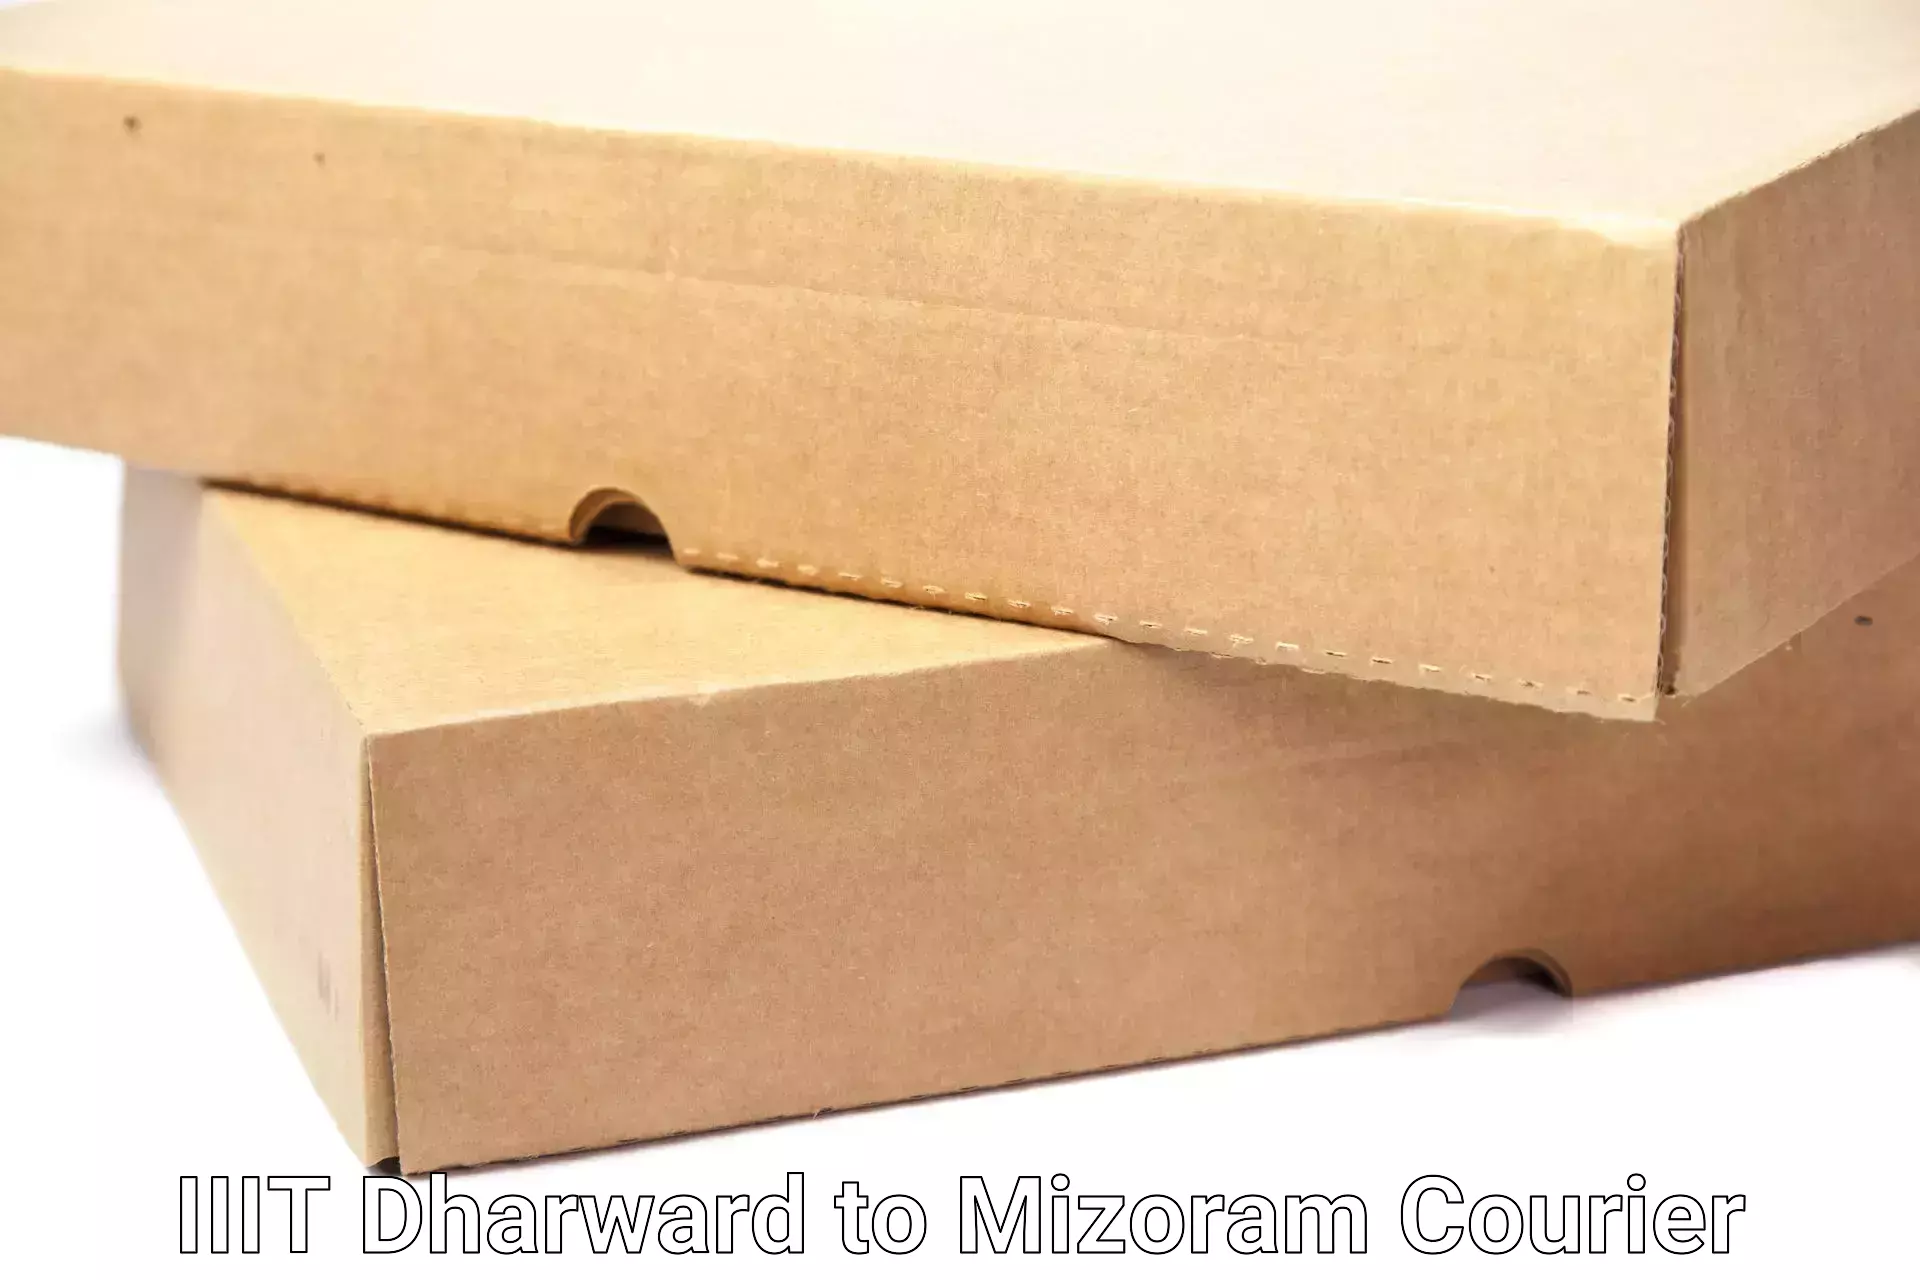 Efficient household relocation in IIIT Dharward to Mizoram